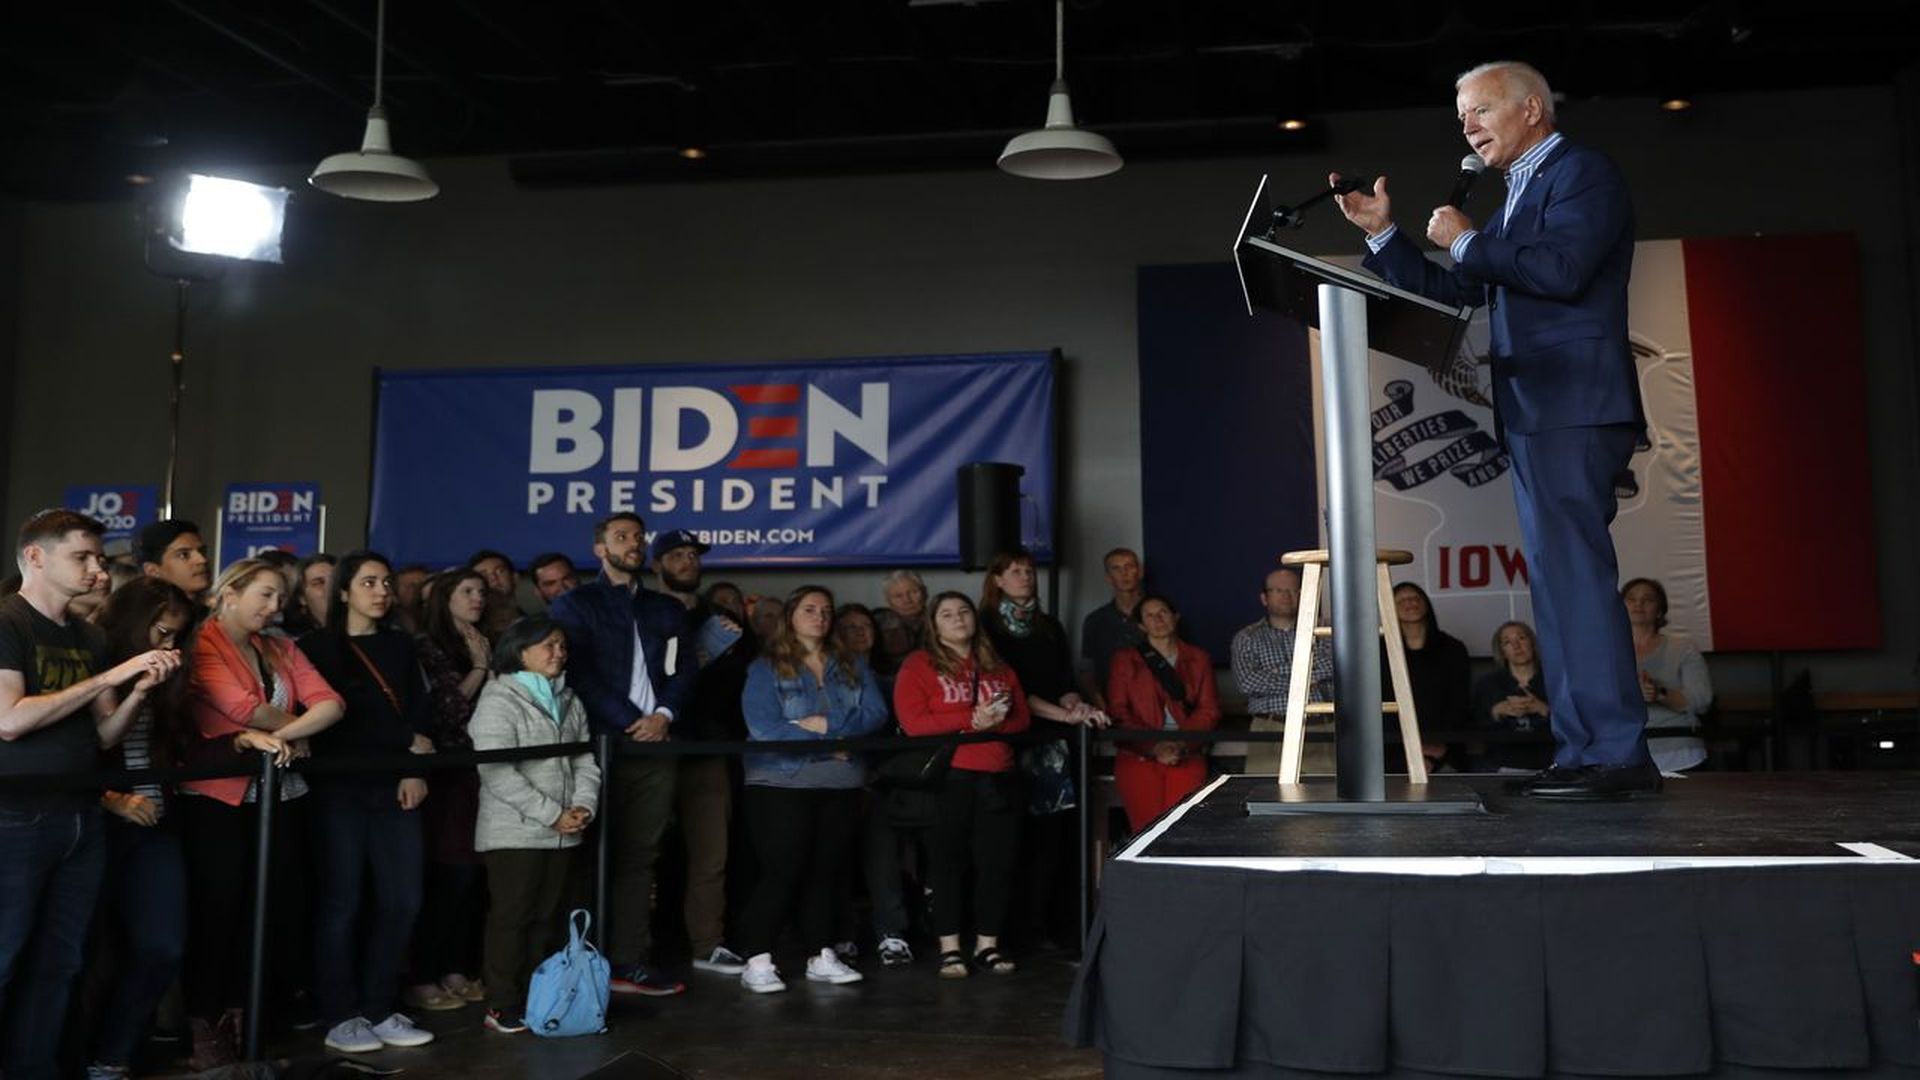 Joe Biden on stage in Iowa